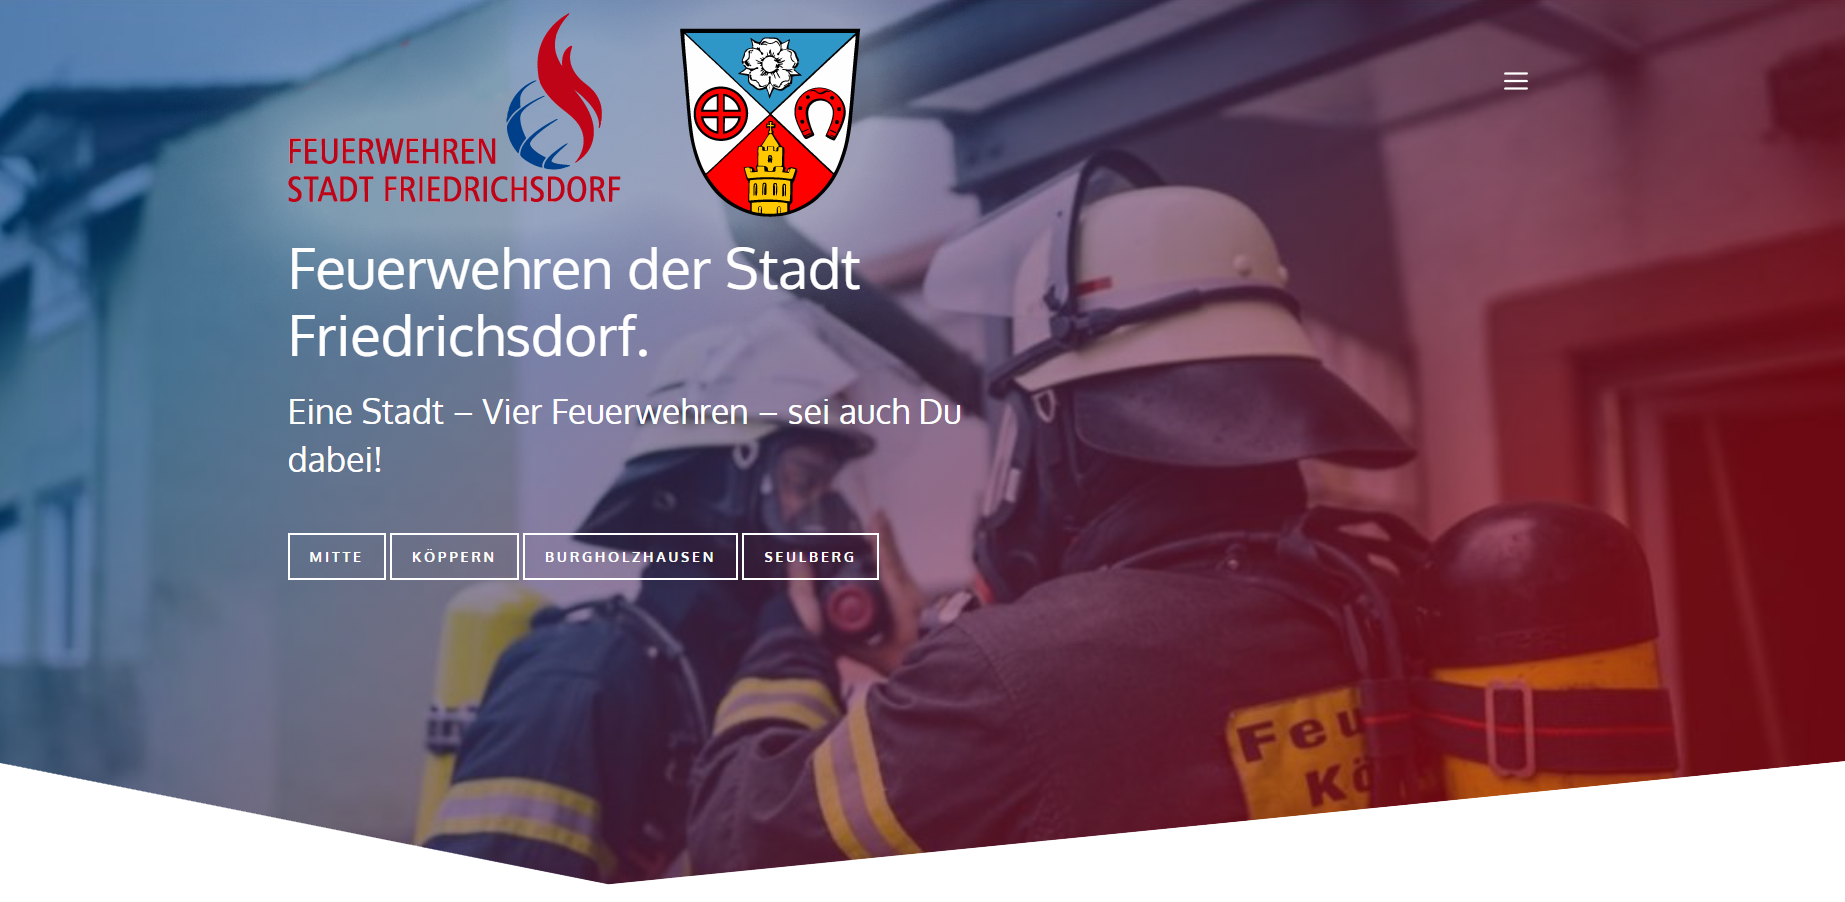 Feuerwehren der Stadt Friedrichsdorf